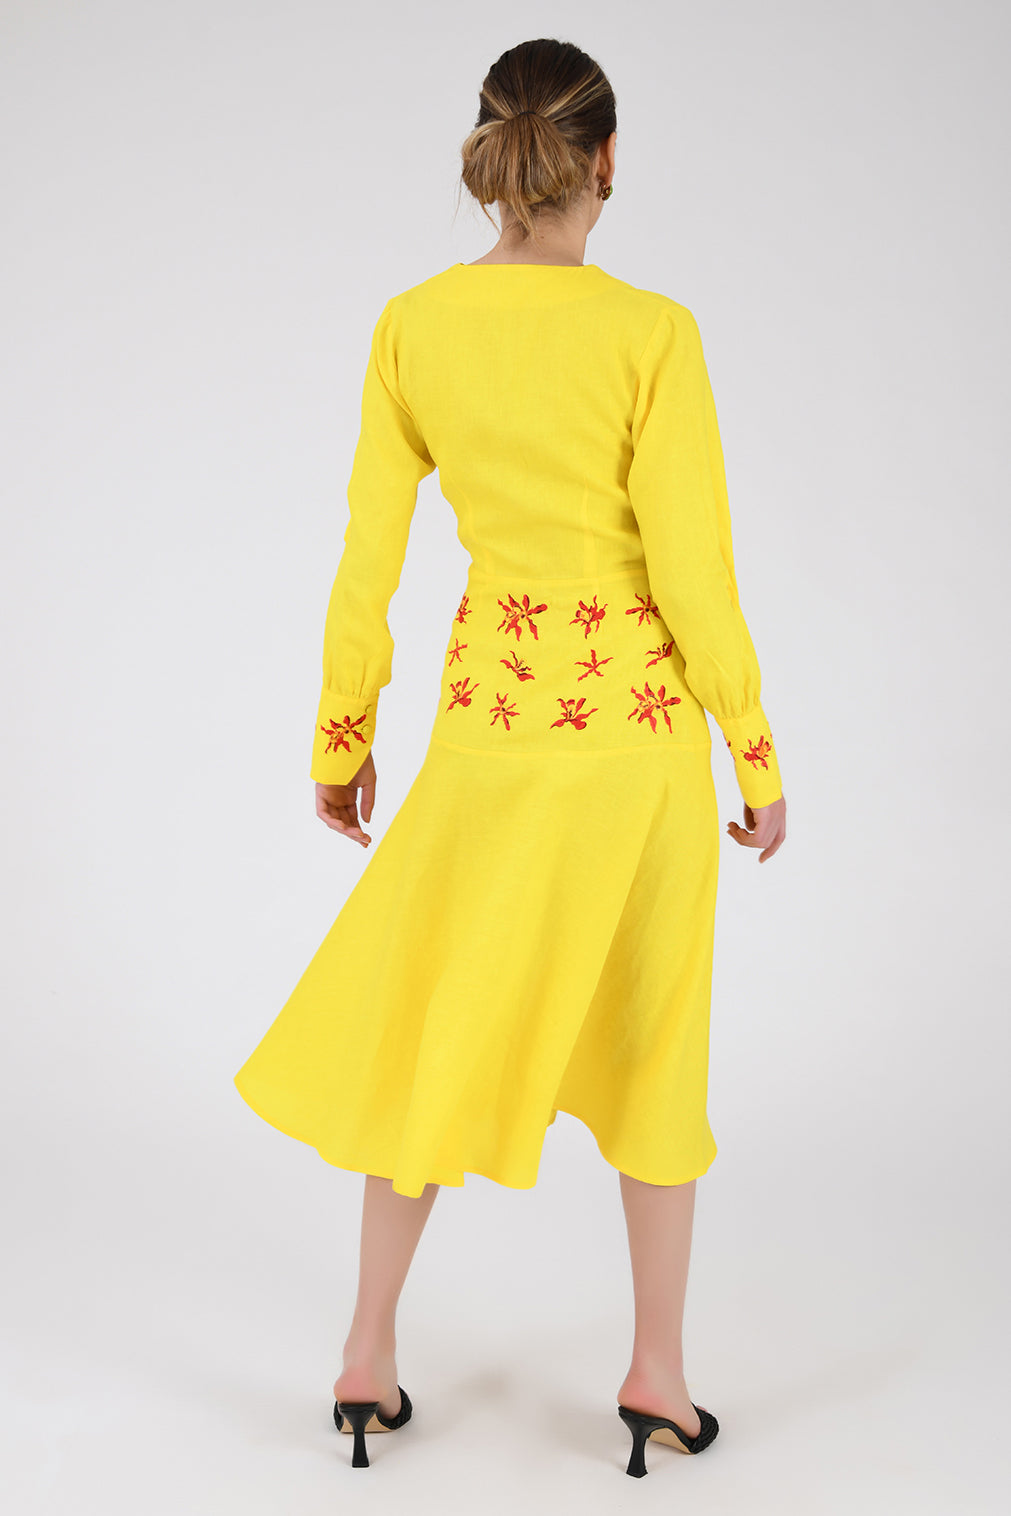 KLARE DRESS (Wanga Collection)